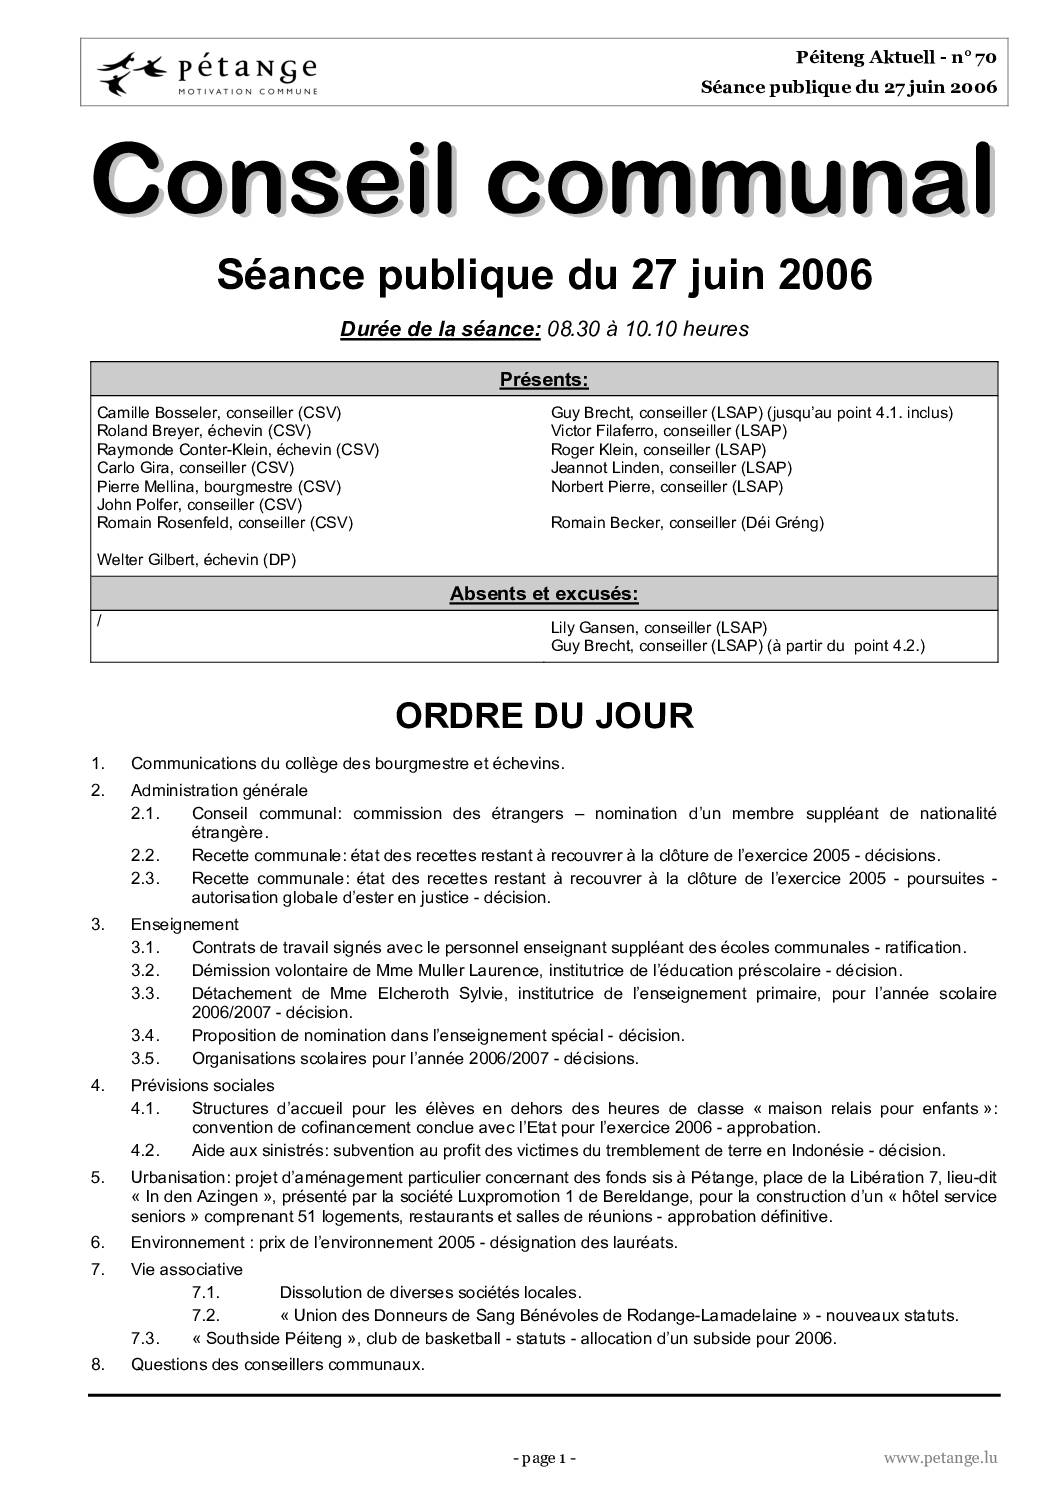 Rapports des séances du conseil communal du 27.06.2006, 17.07.2006 et 28.07.2006